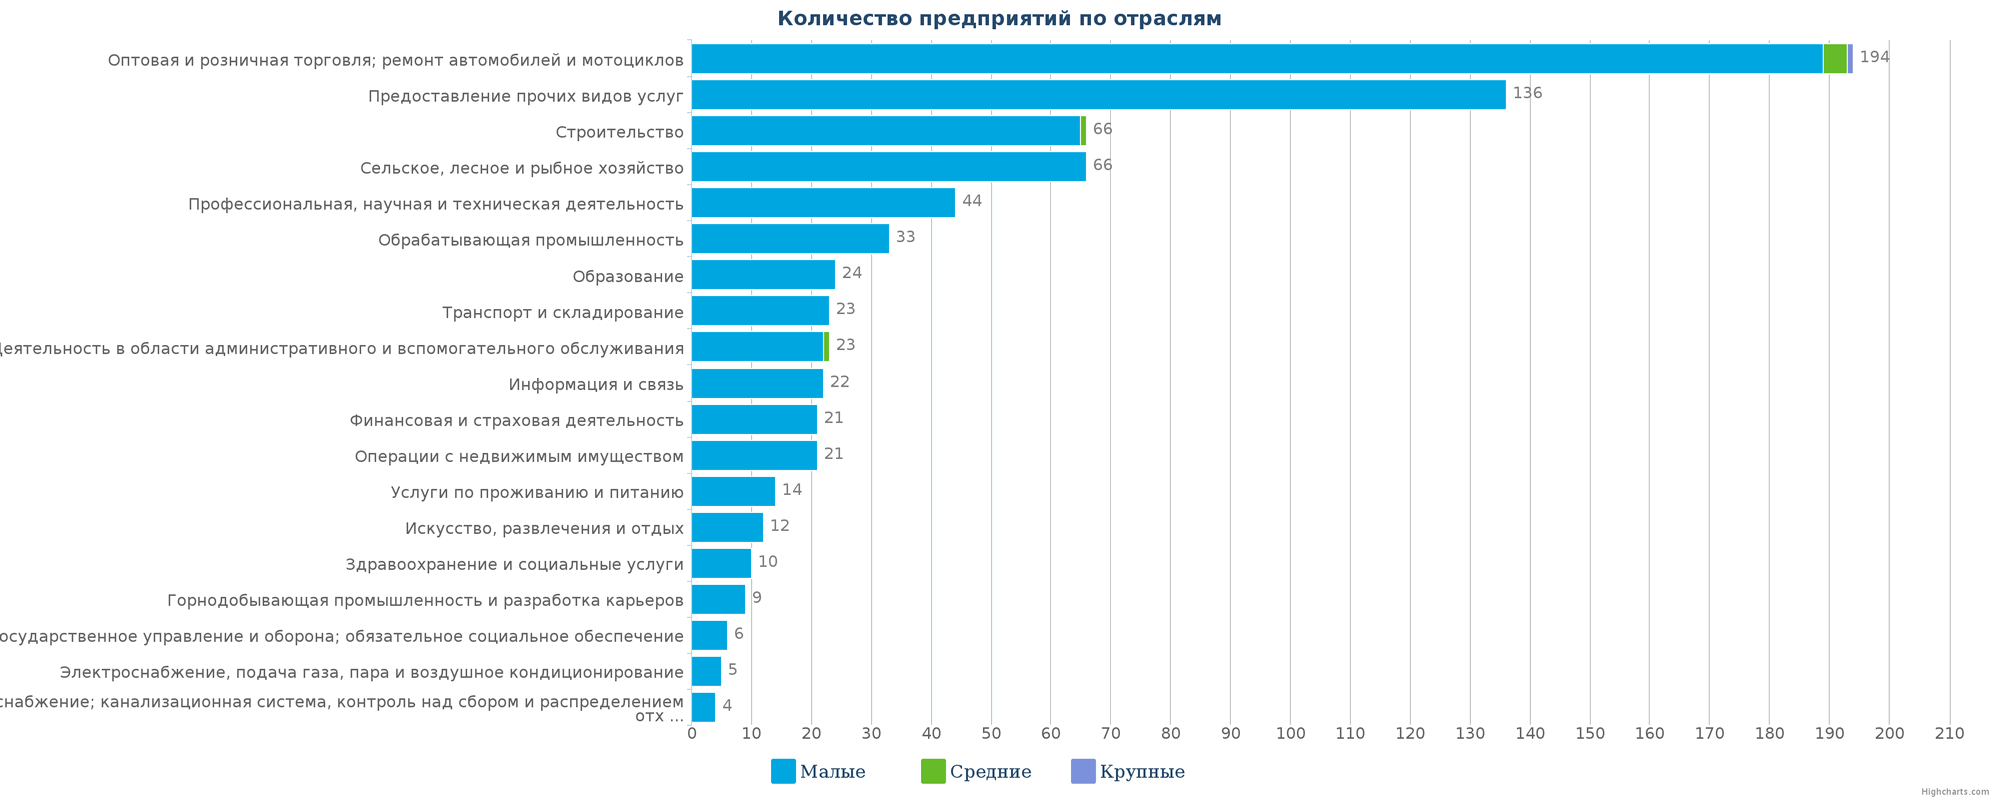 Новые компании в государственном реестре Казахстана